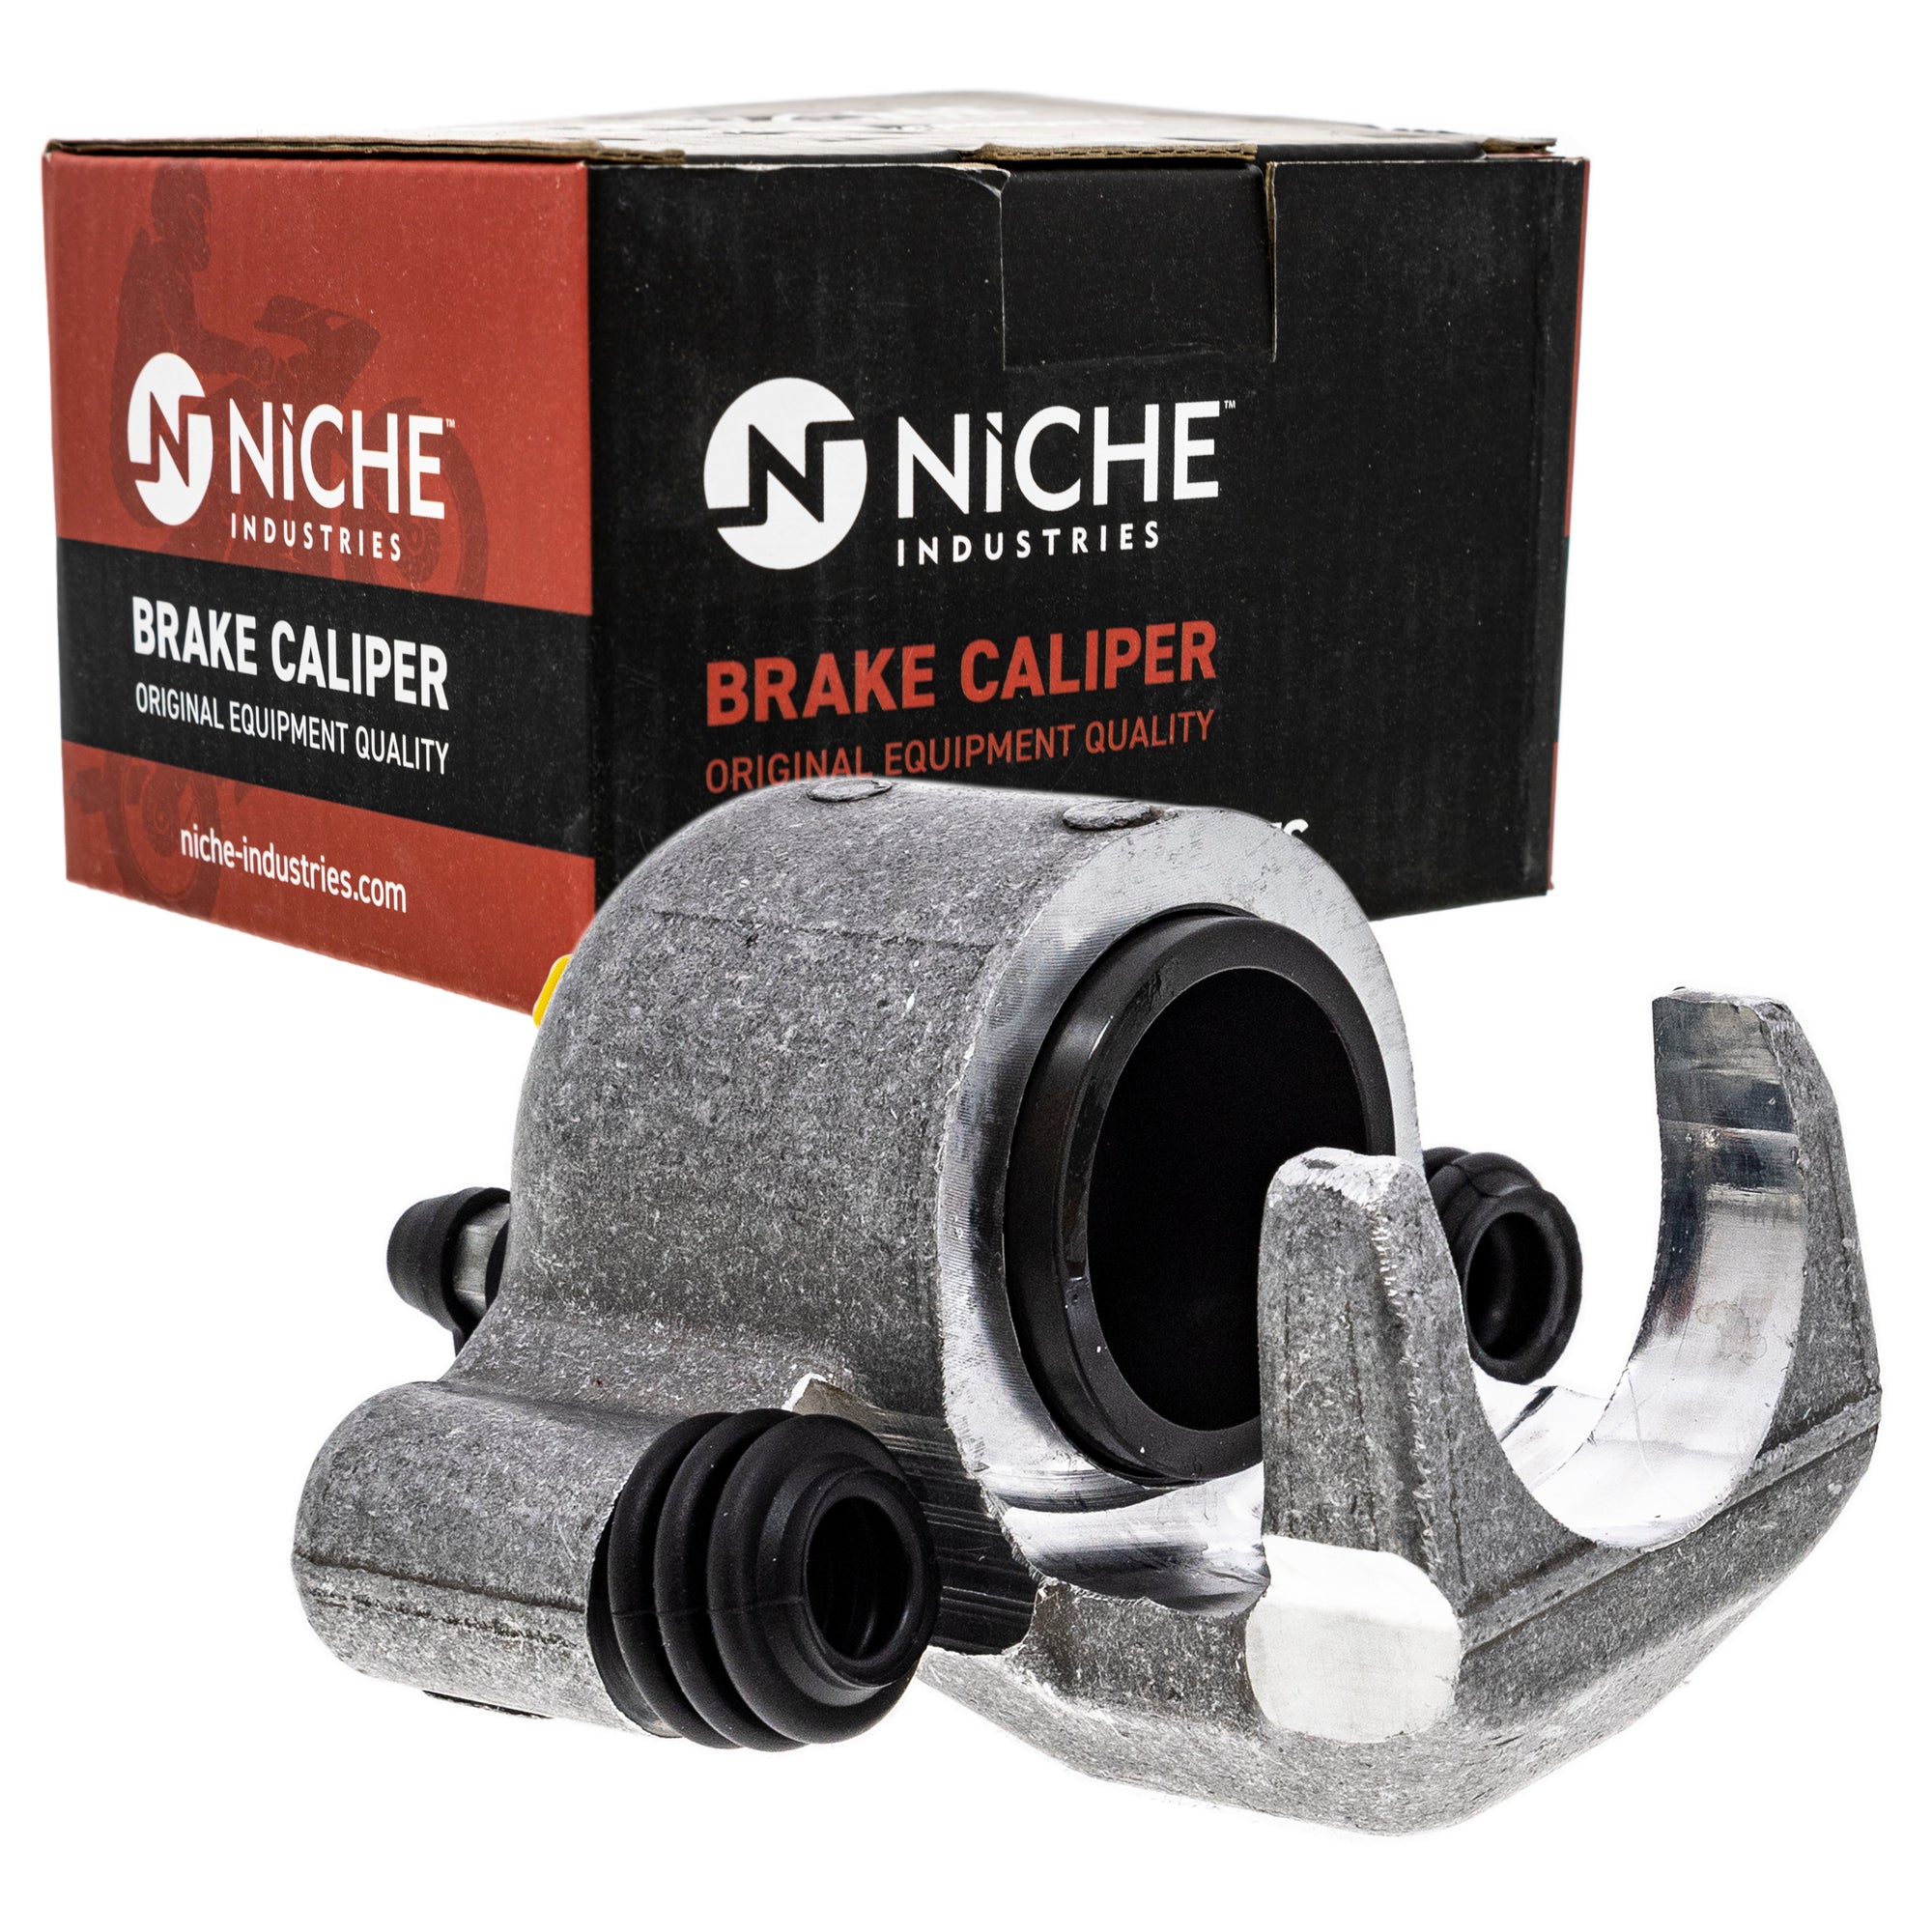 NICHE MK1001007 Brake Caliper Kit